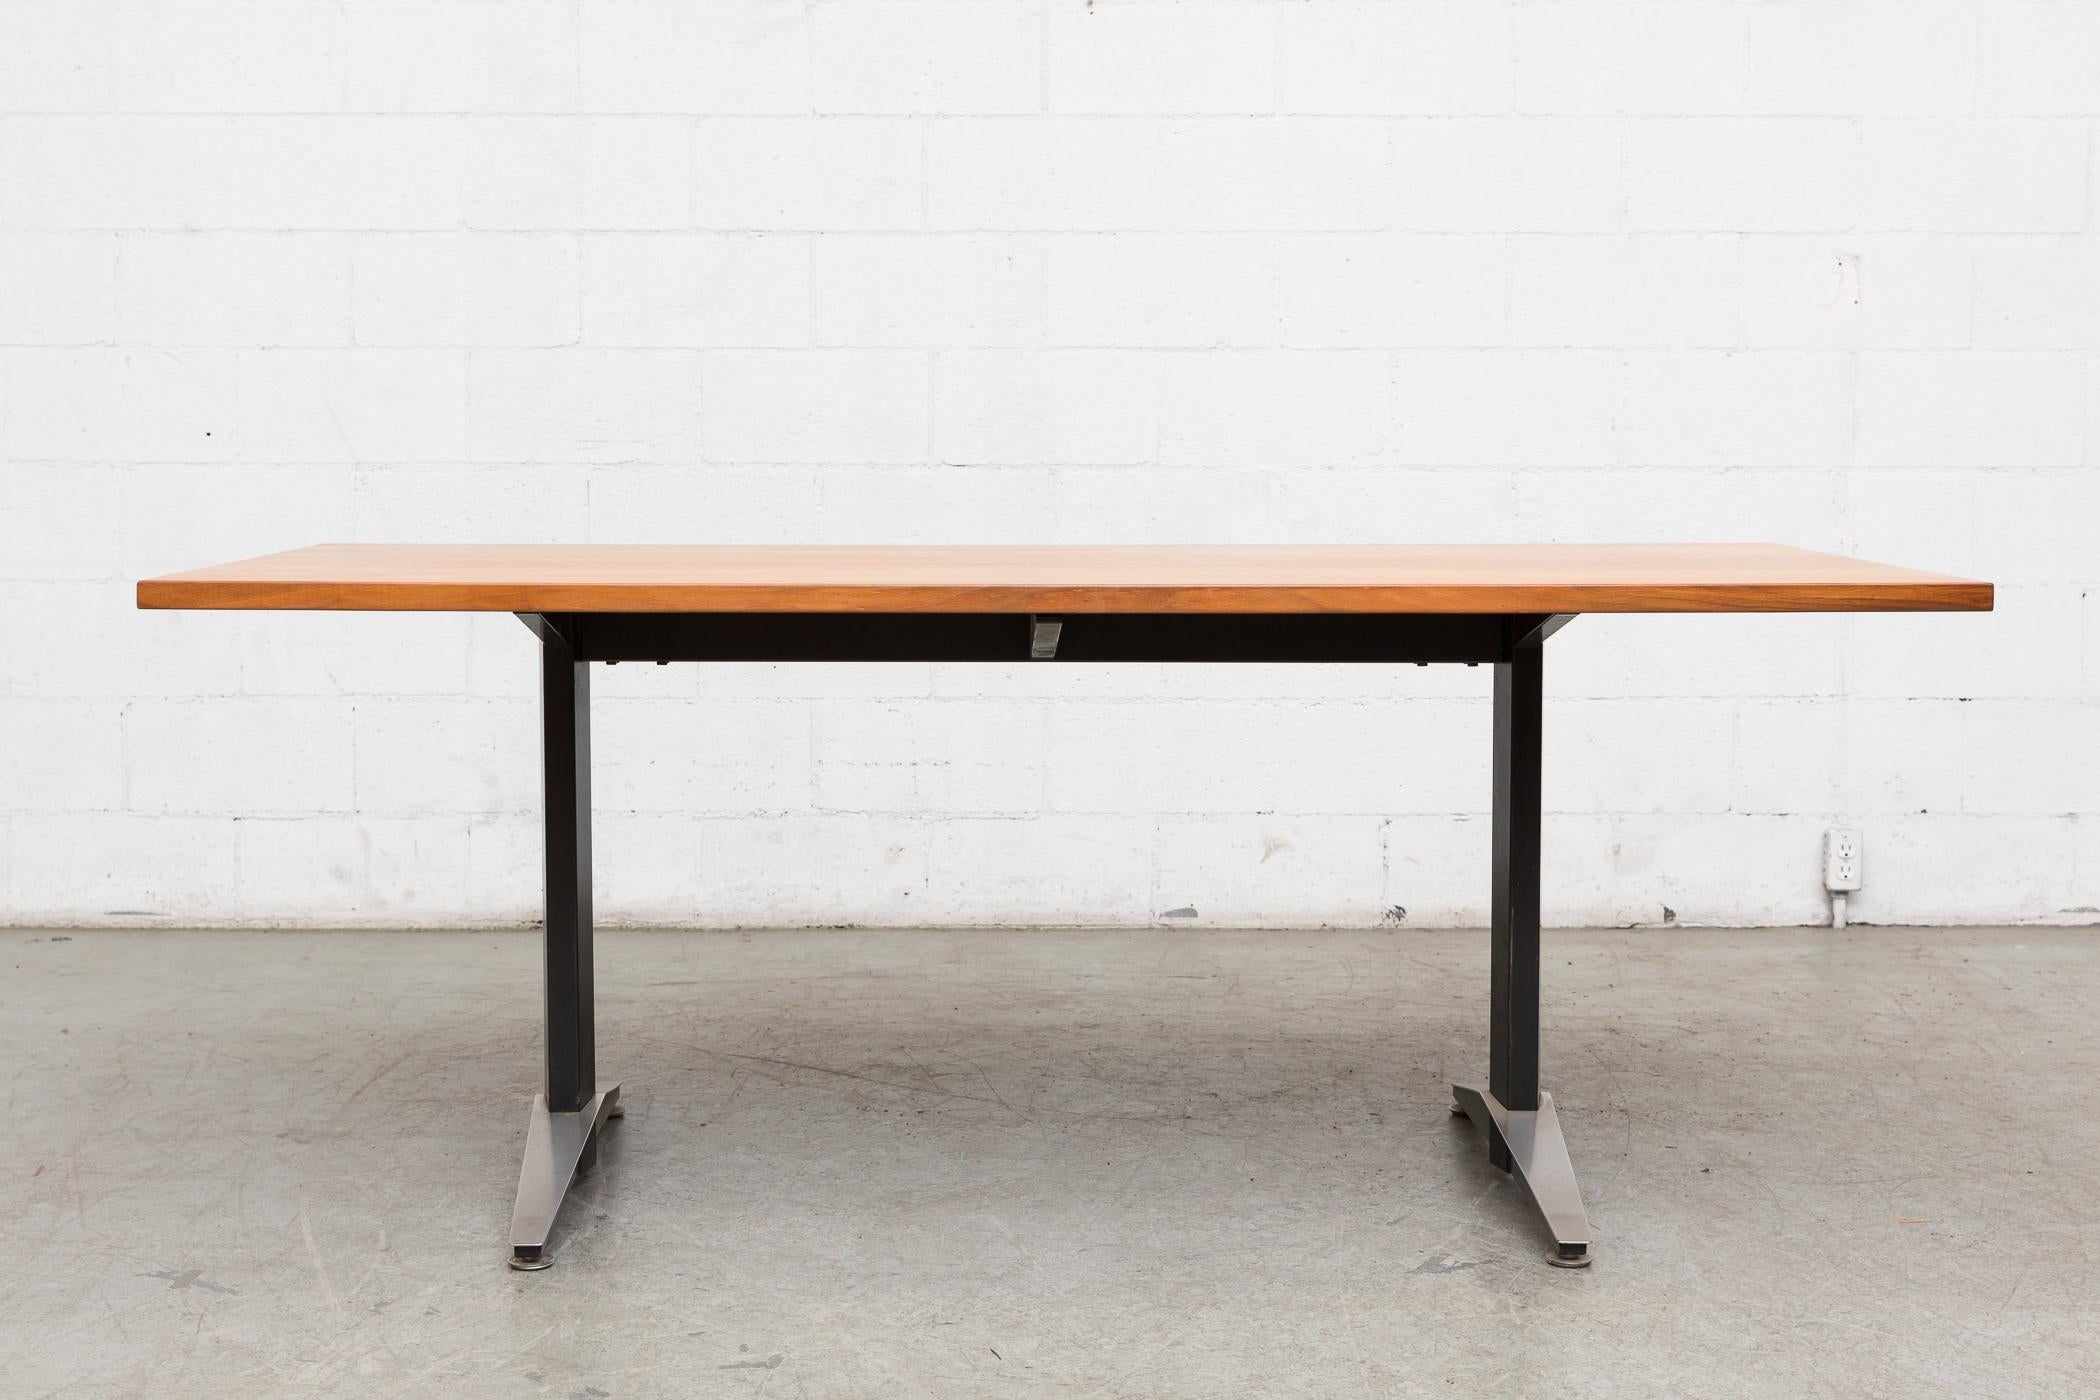 Fabriquée en février 1972 par le célèbre fabricant de meubles néerlandais Gispen (comme en témoigne l'autocollant de qualité apposé sous le plateau de la table), cette table de conférence ou de salle à manger aux dimensions généreuses présente une